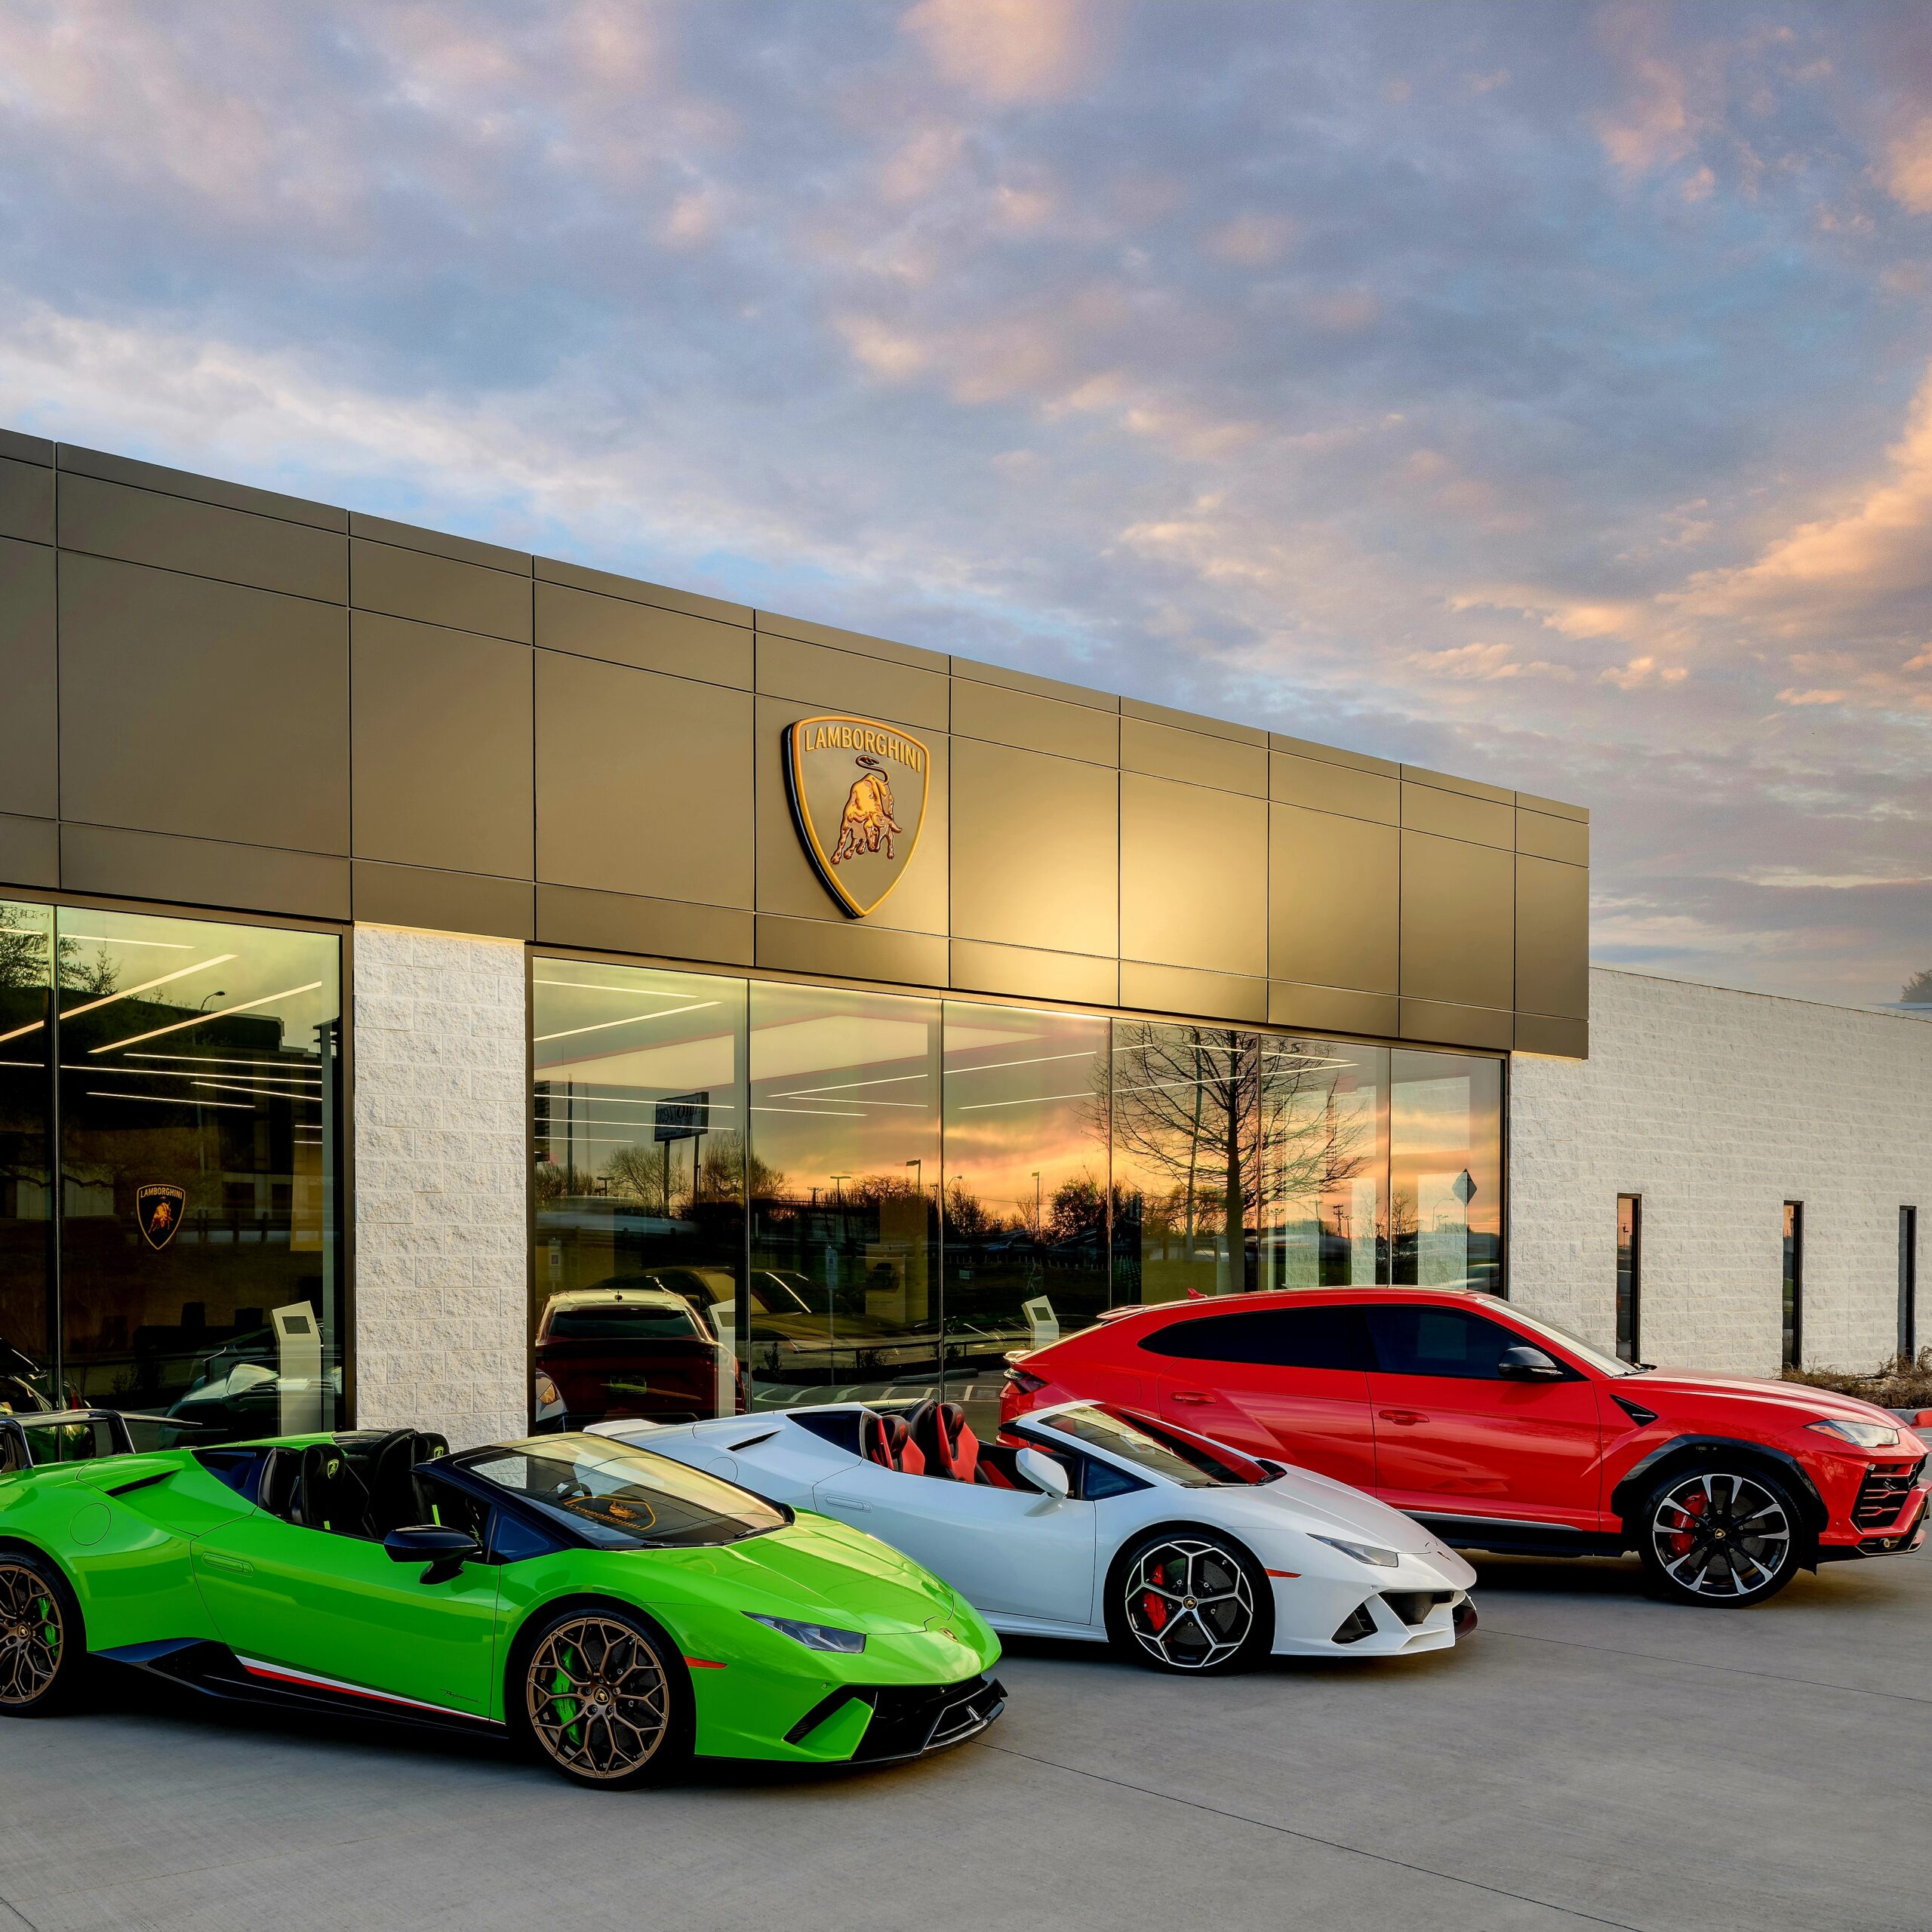 Lamborghini Dealer in Dallas, Texas via 360 MAGAZINE